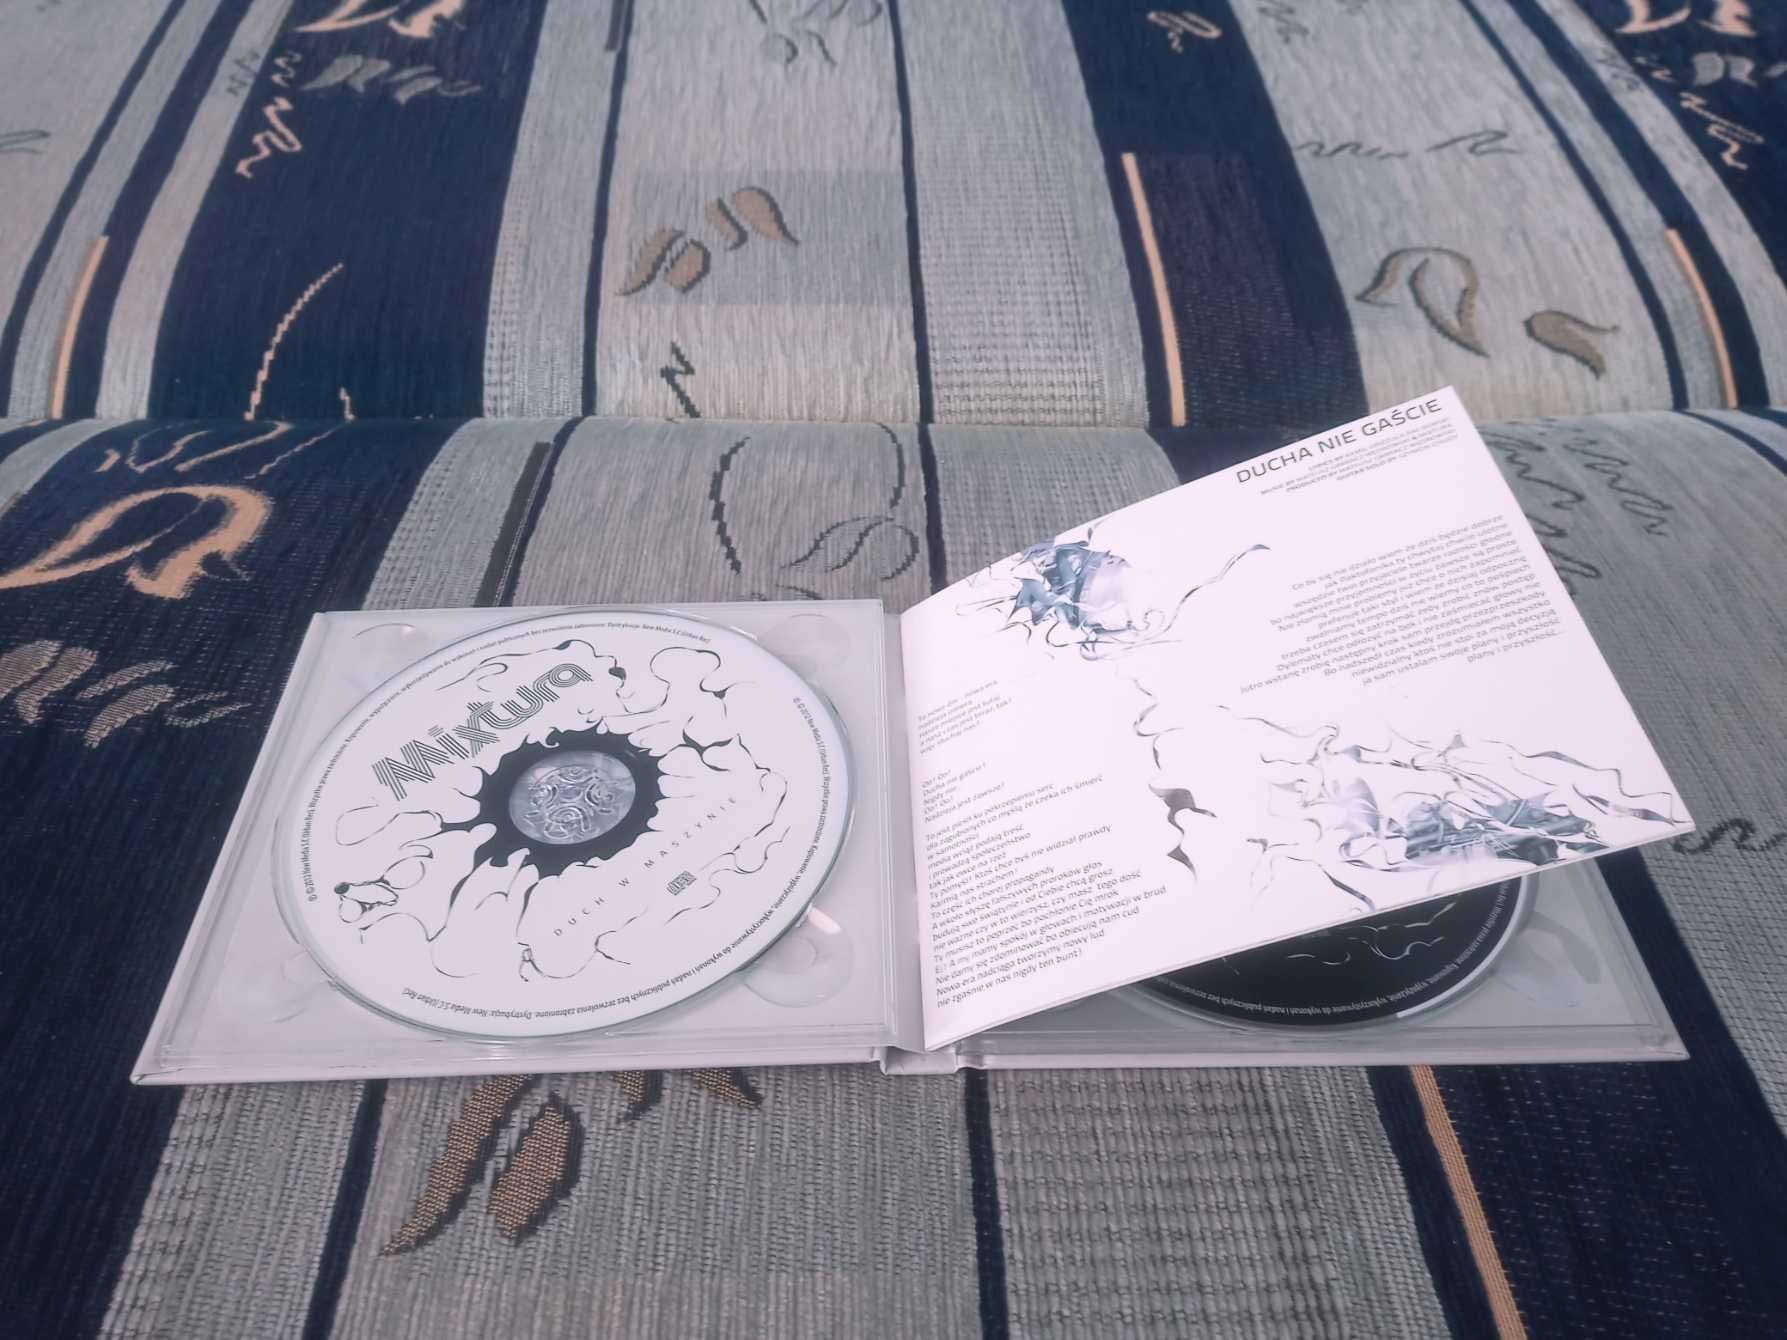 Mixtura – Duch w Maszynie (2012) 2 CD